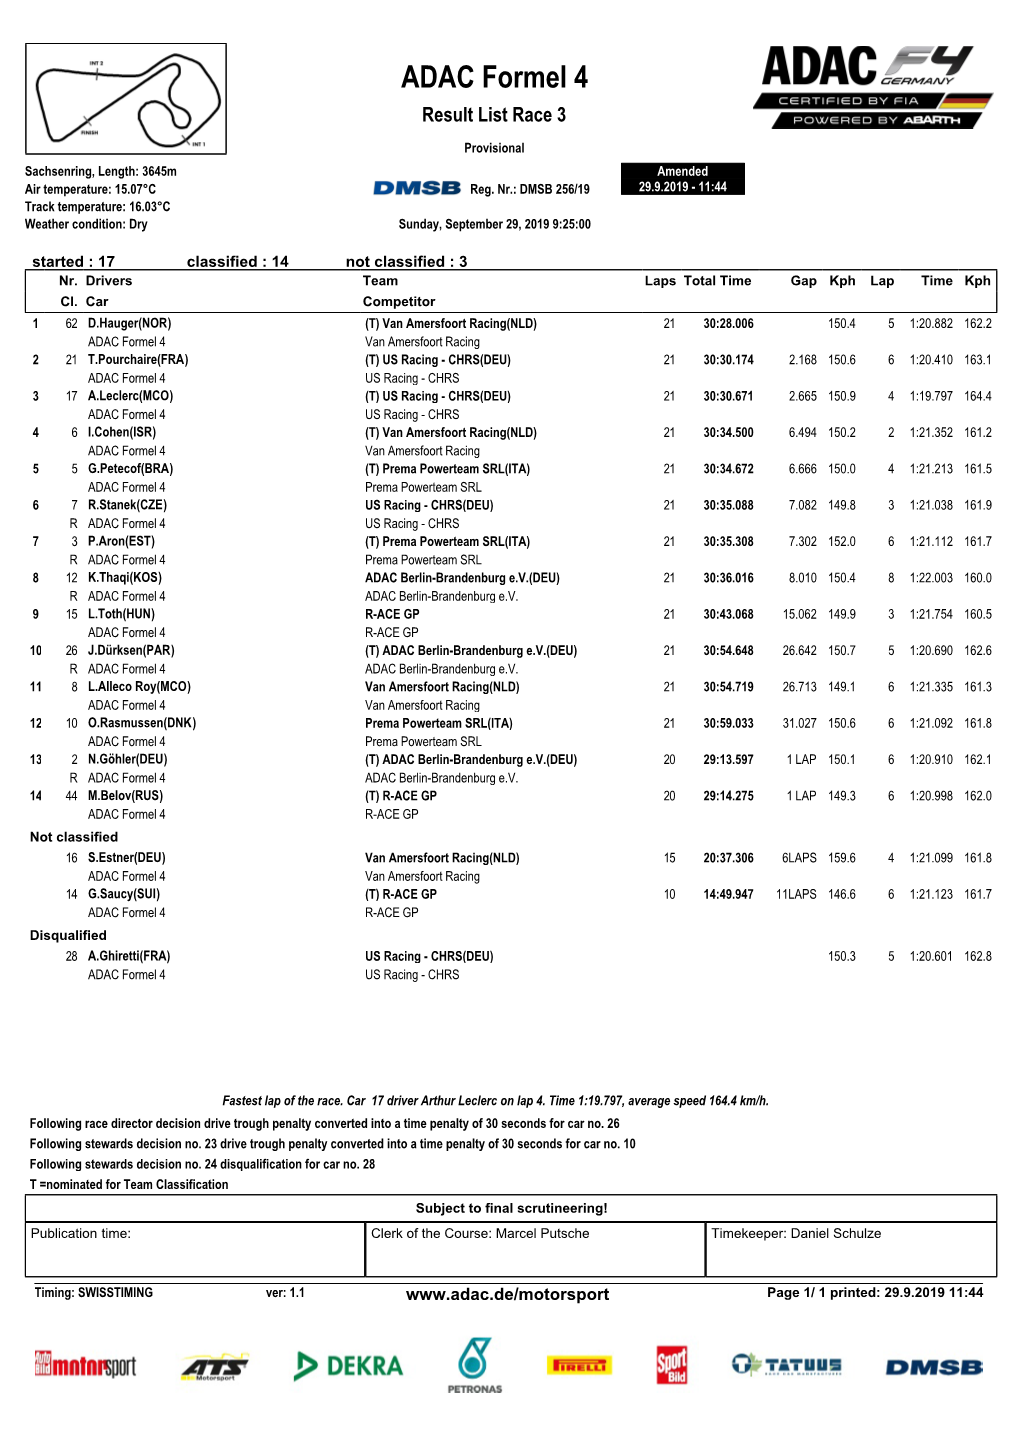 ADAC Formel 4 Result List Race 3